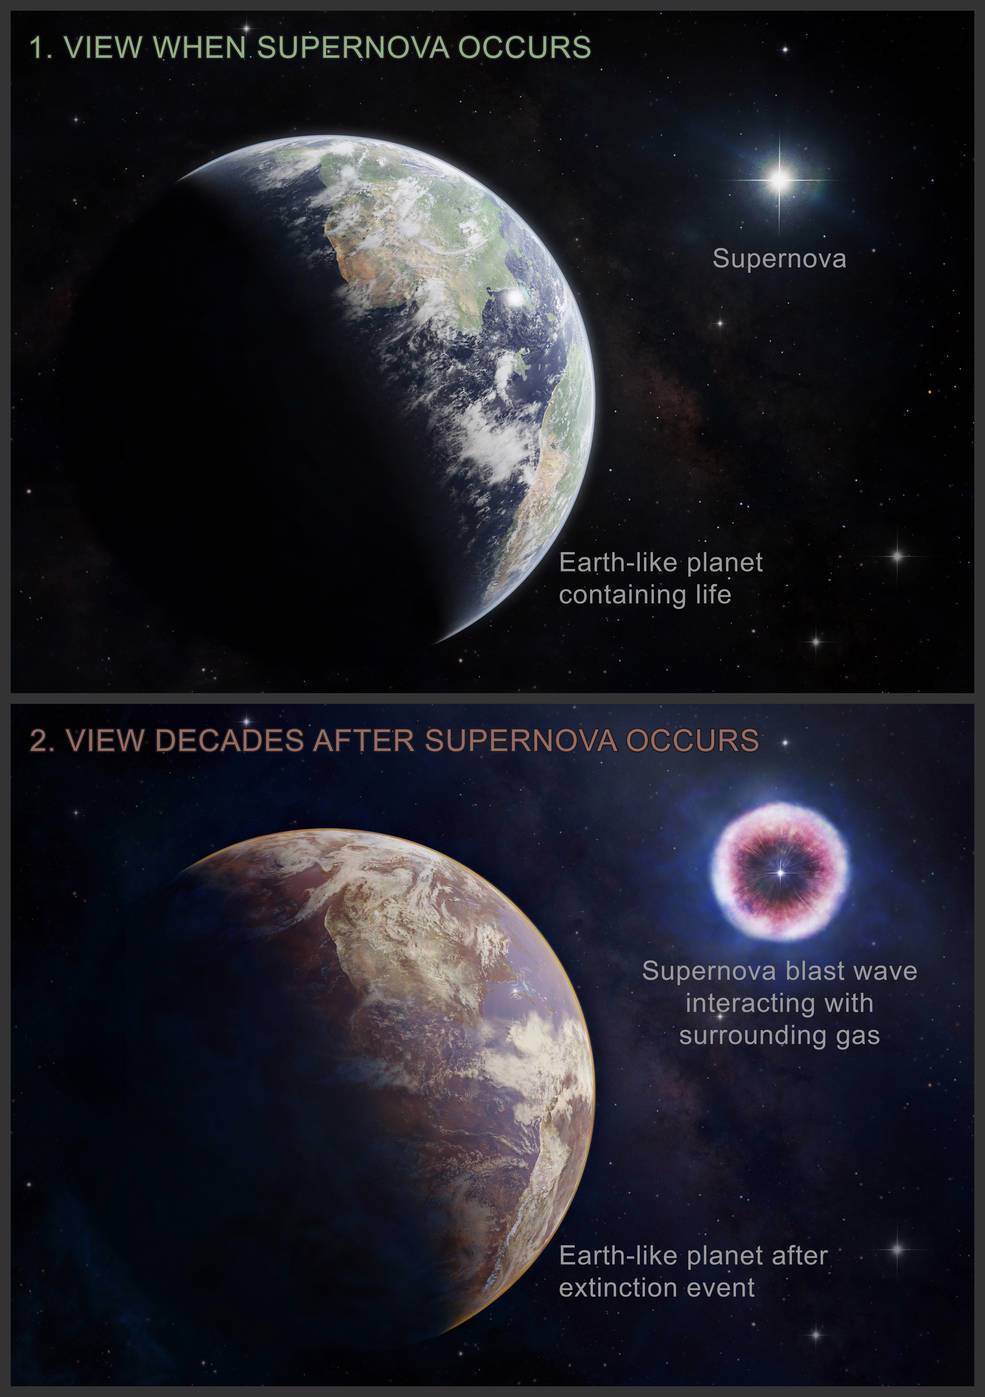 una supernova podria causar la proxima extincion masiva en la tierra 2